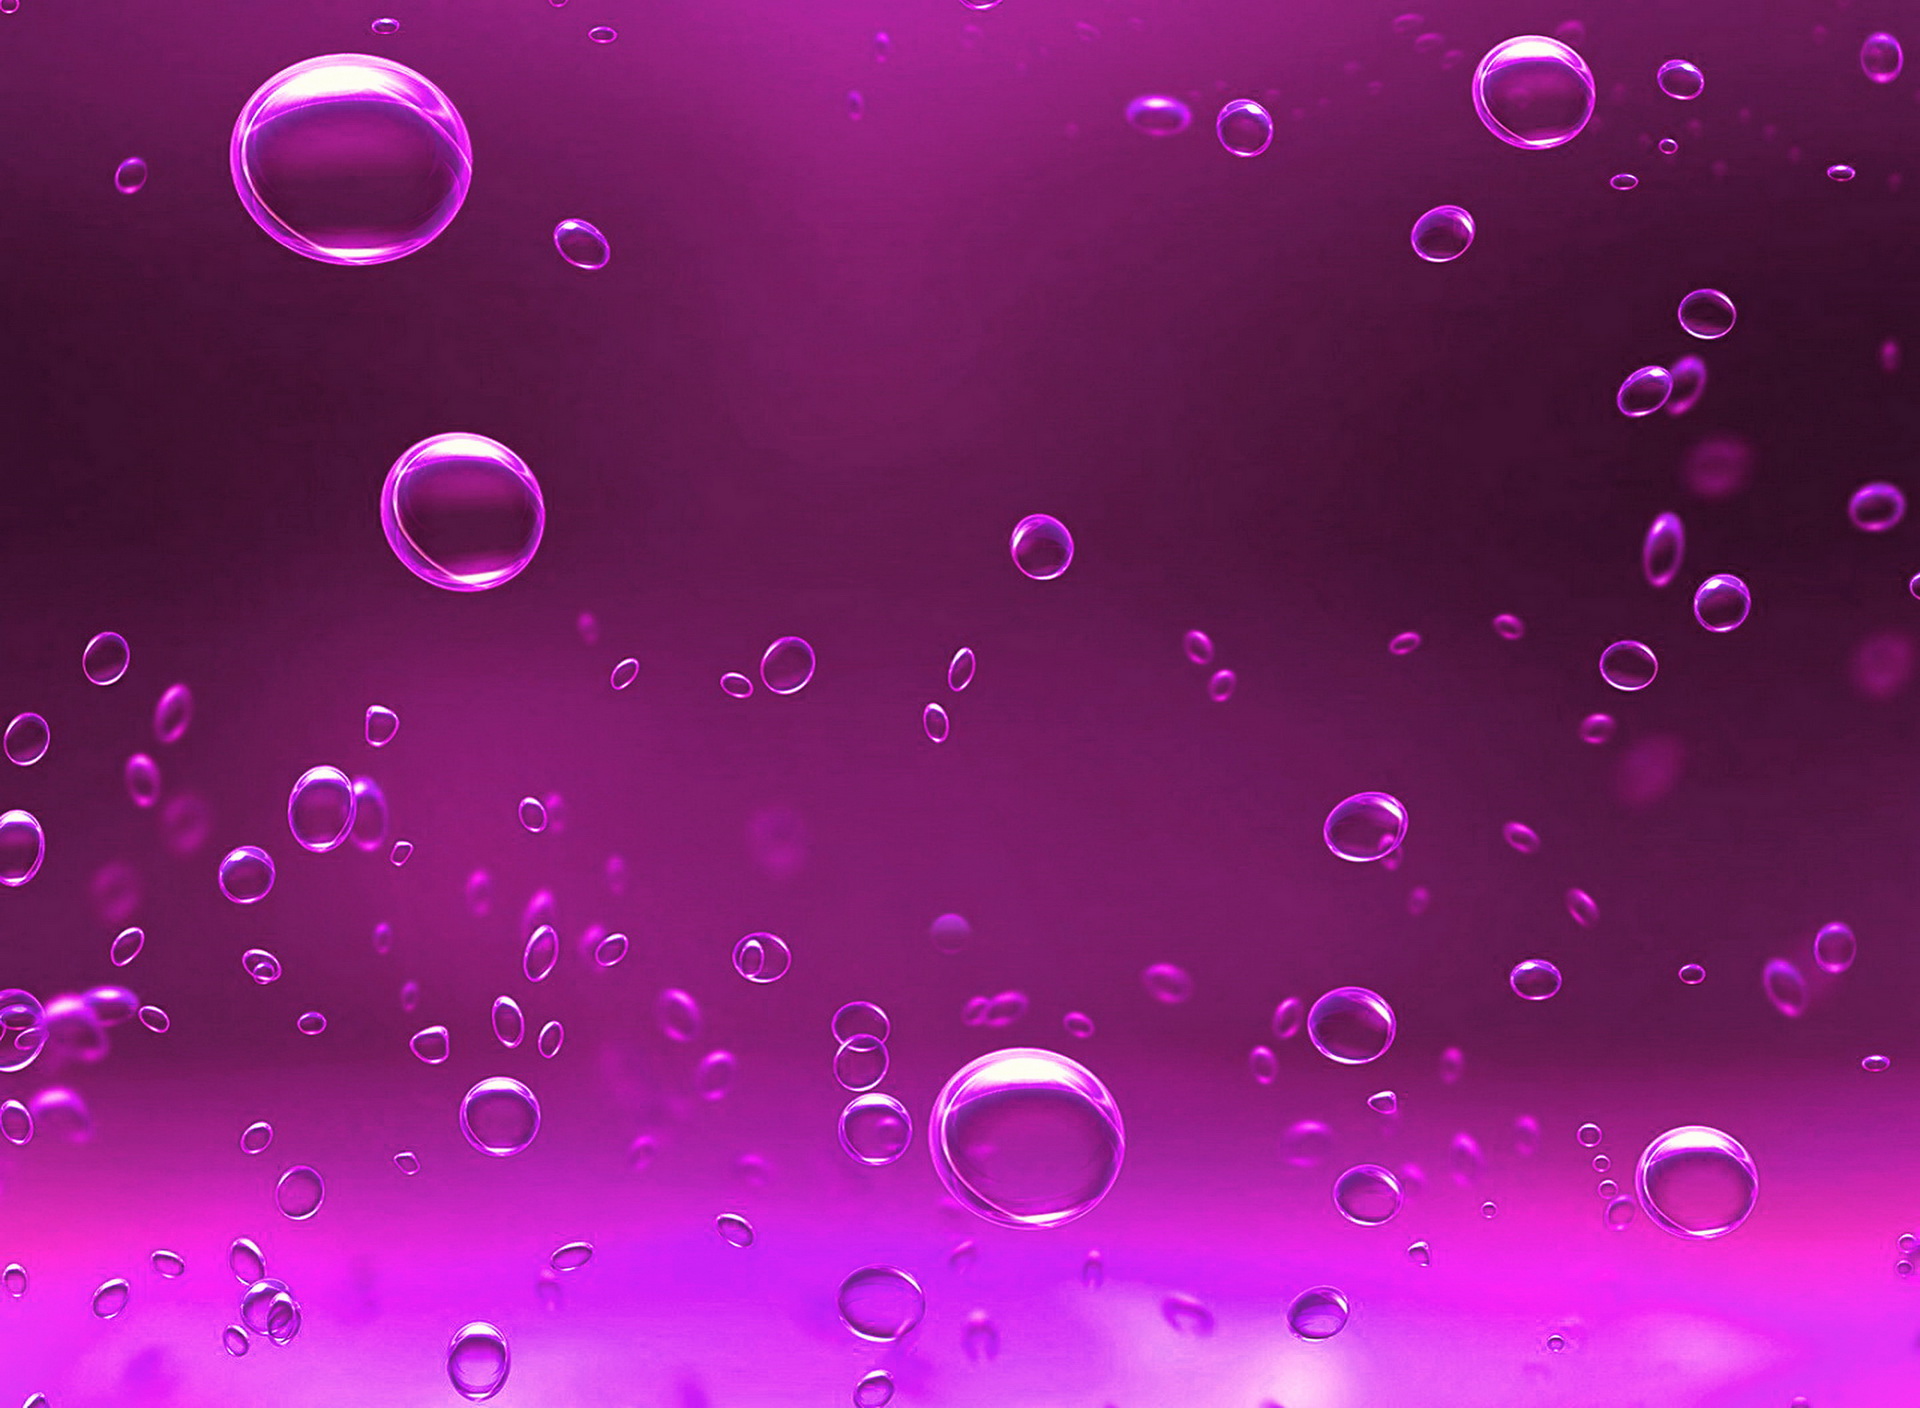 Pink Bubbles Screensaver Wallpaper And Purple Bubbles HD Wallpaper